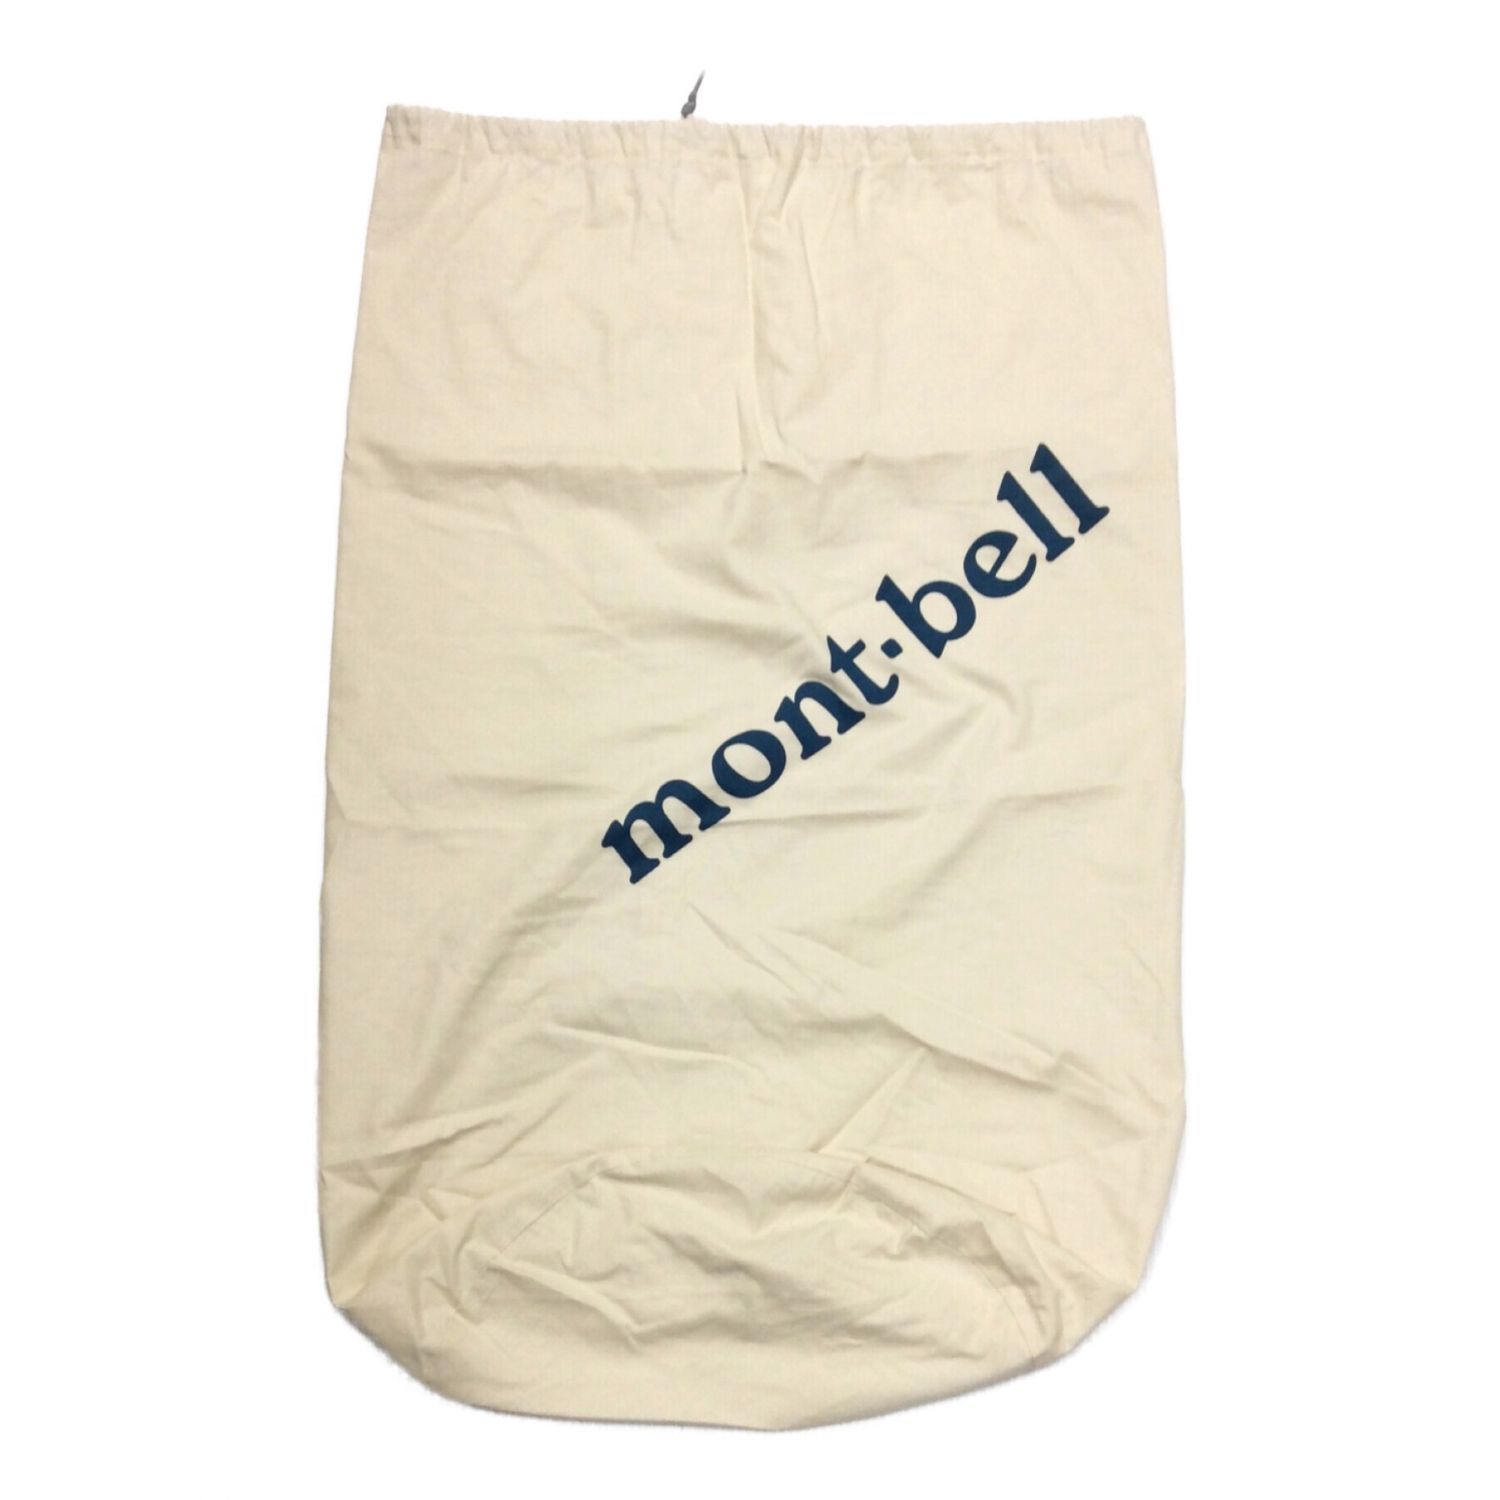 mont-bell (モンベル) ダウンシュラフ 別売りストリージバッグ付き 